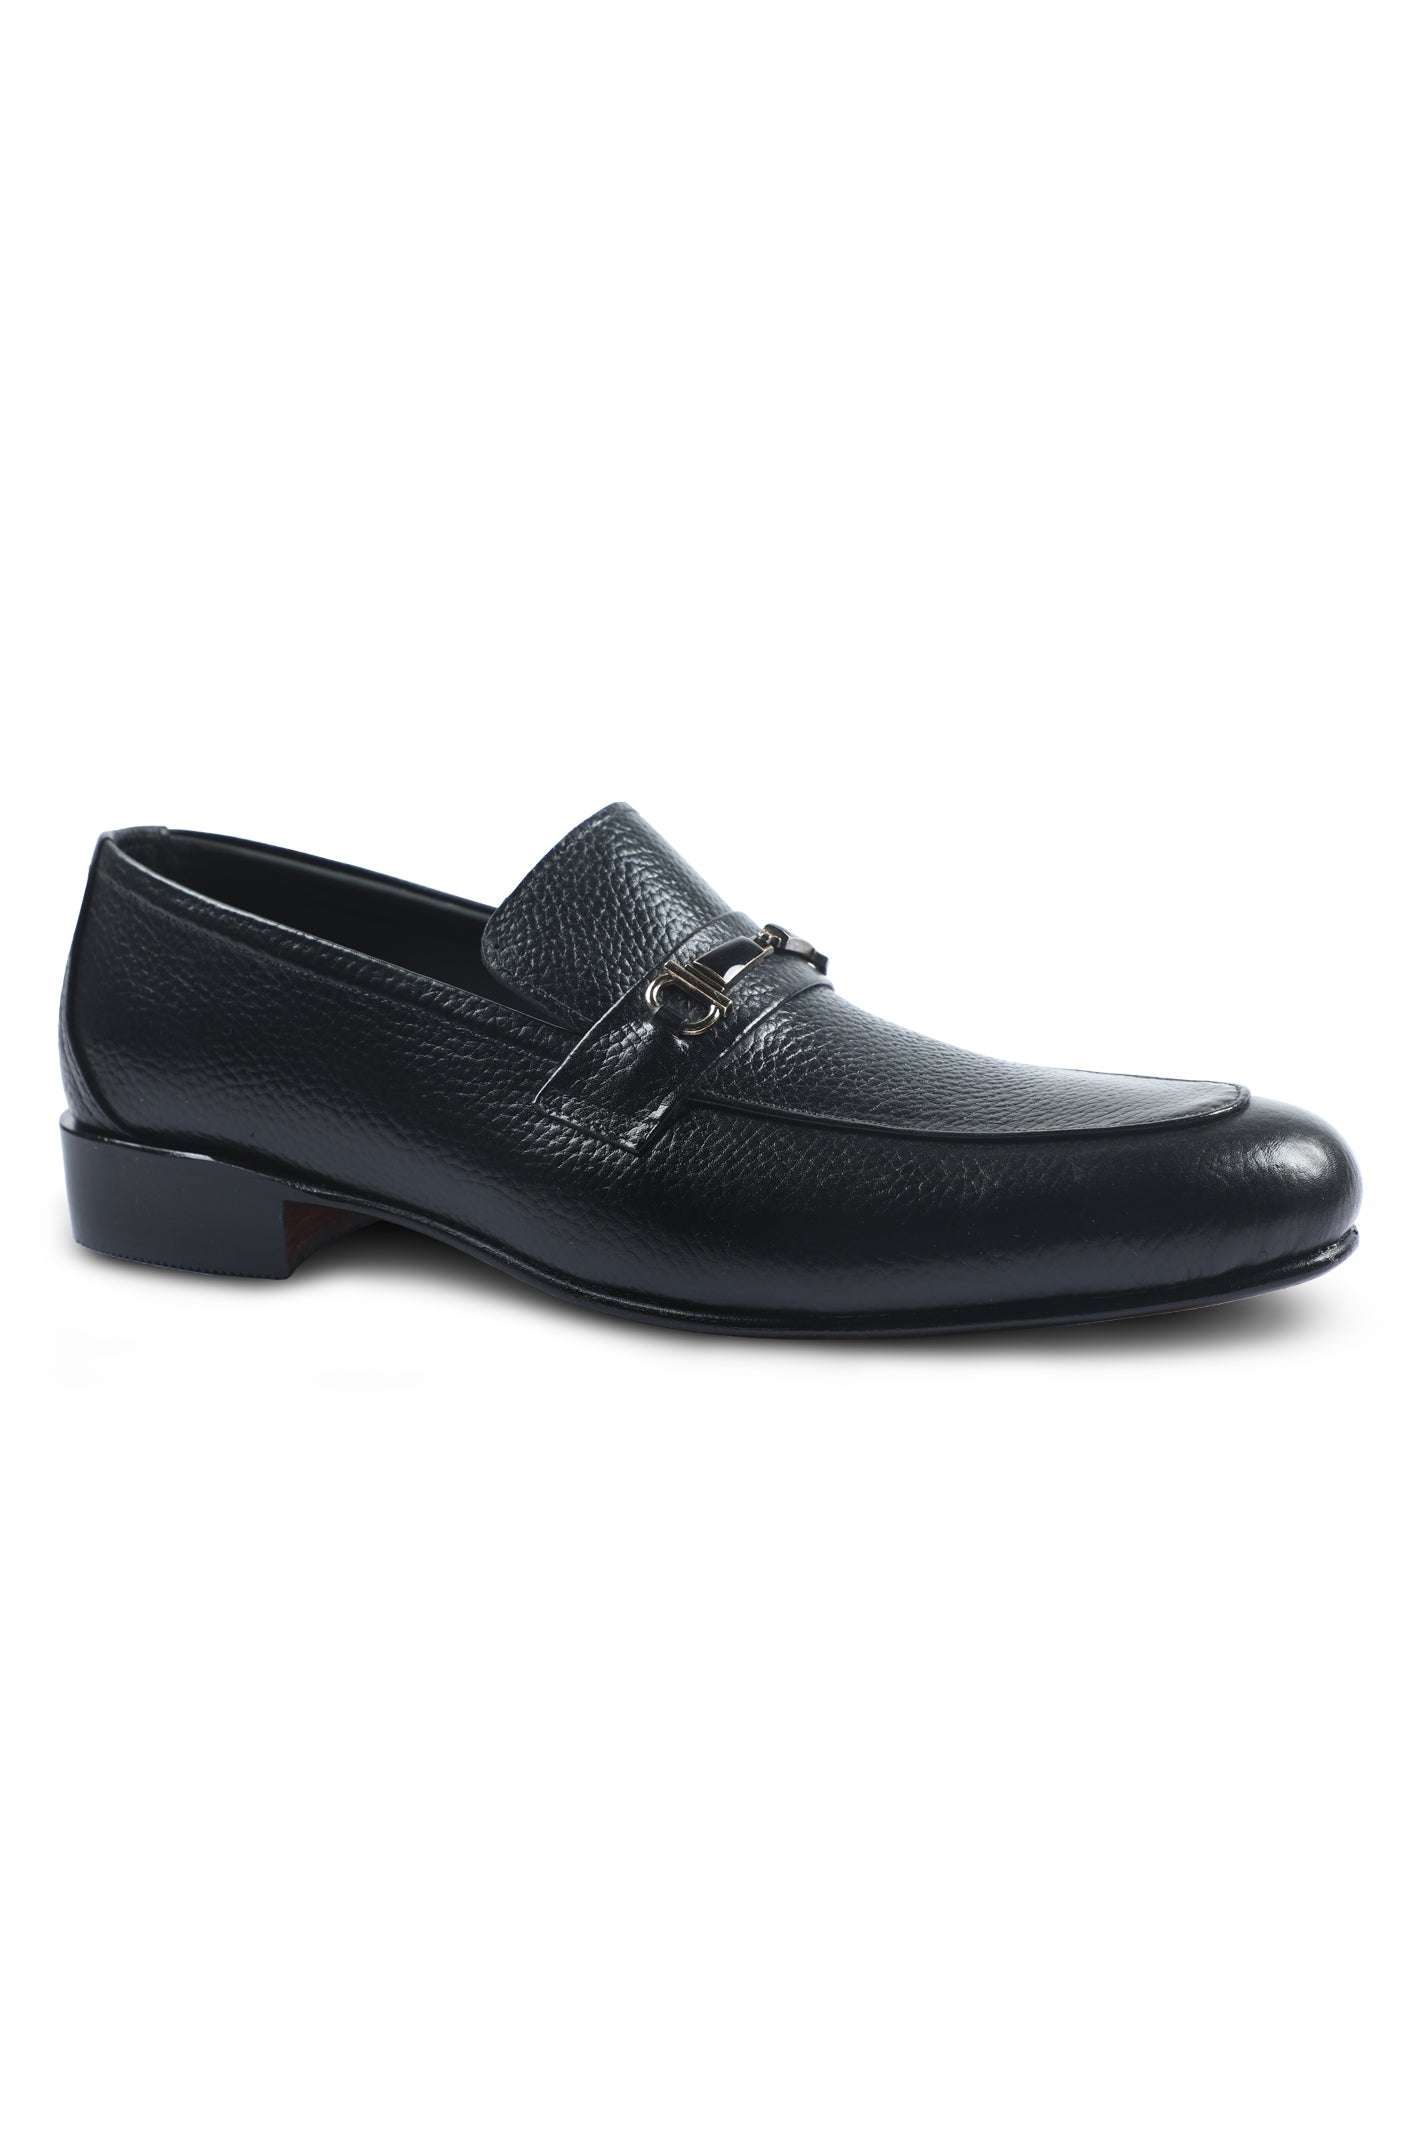 Formal Shoes For Men in Black SKU: SMF-0158-BLACK - Diners